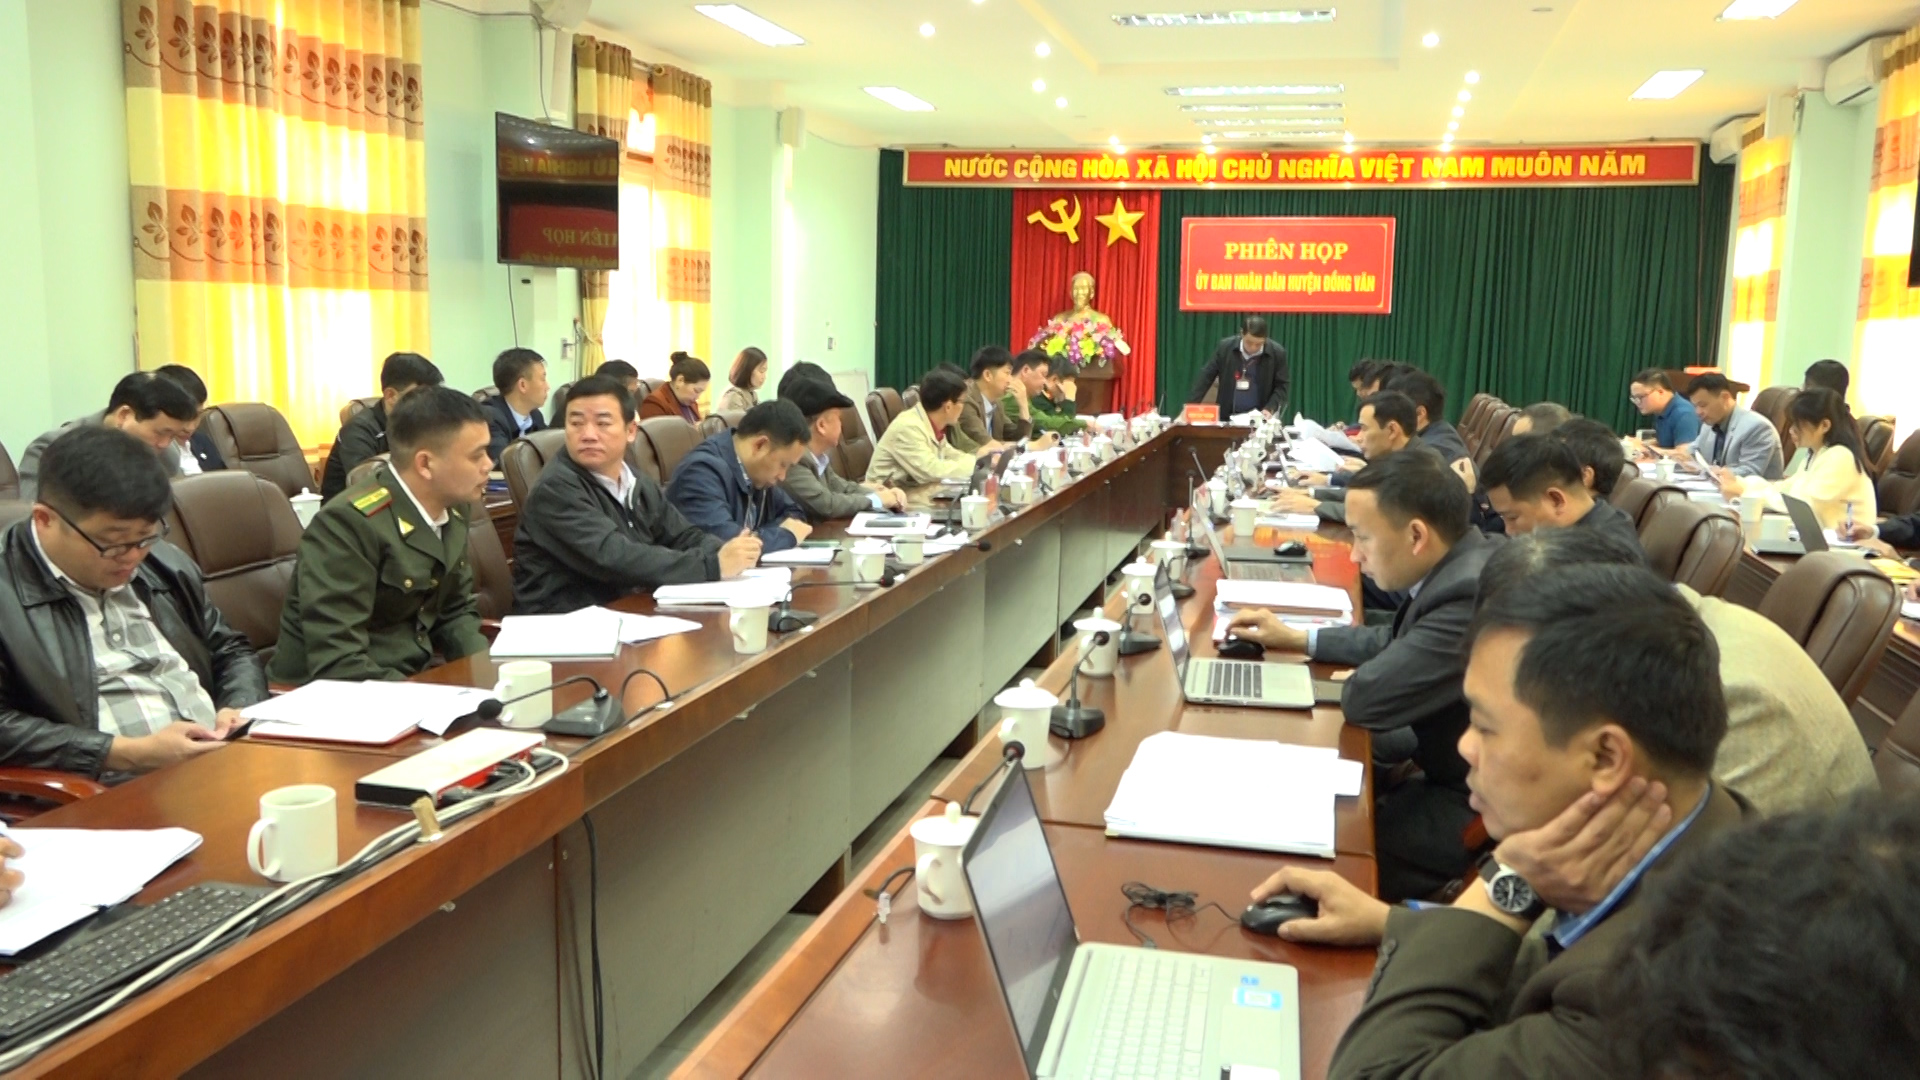 Phiên họp tháng 11 UBND huyện Đồng Văn